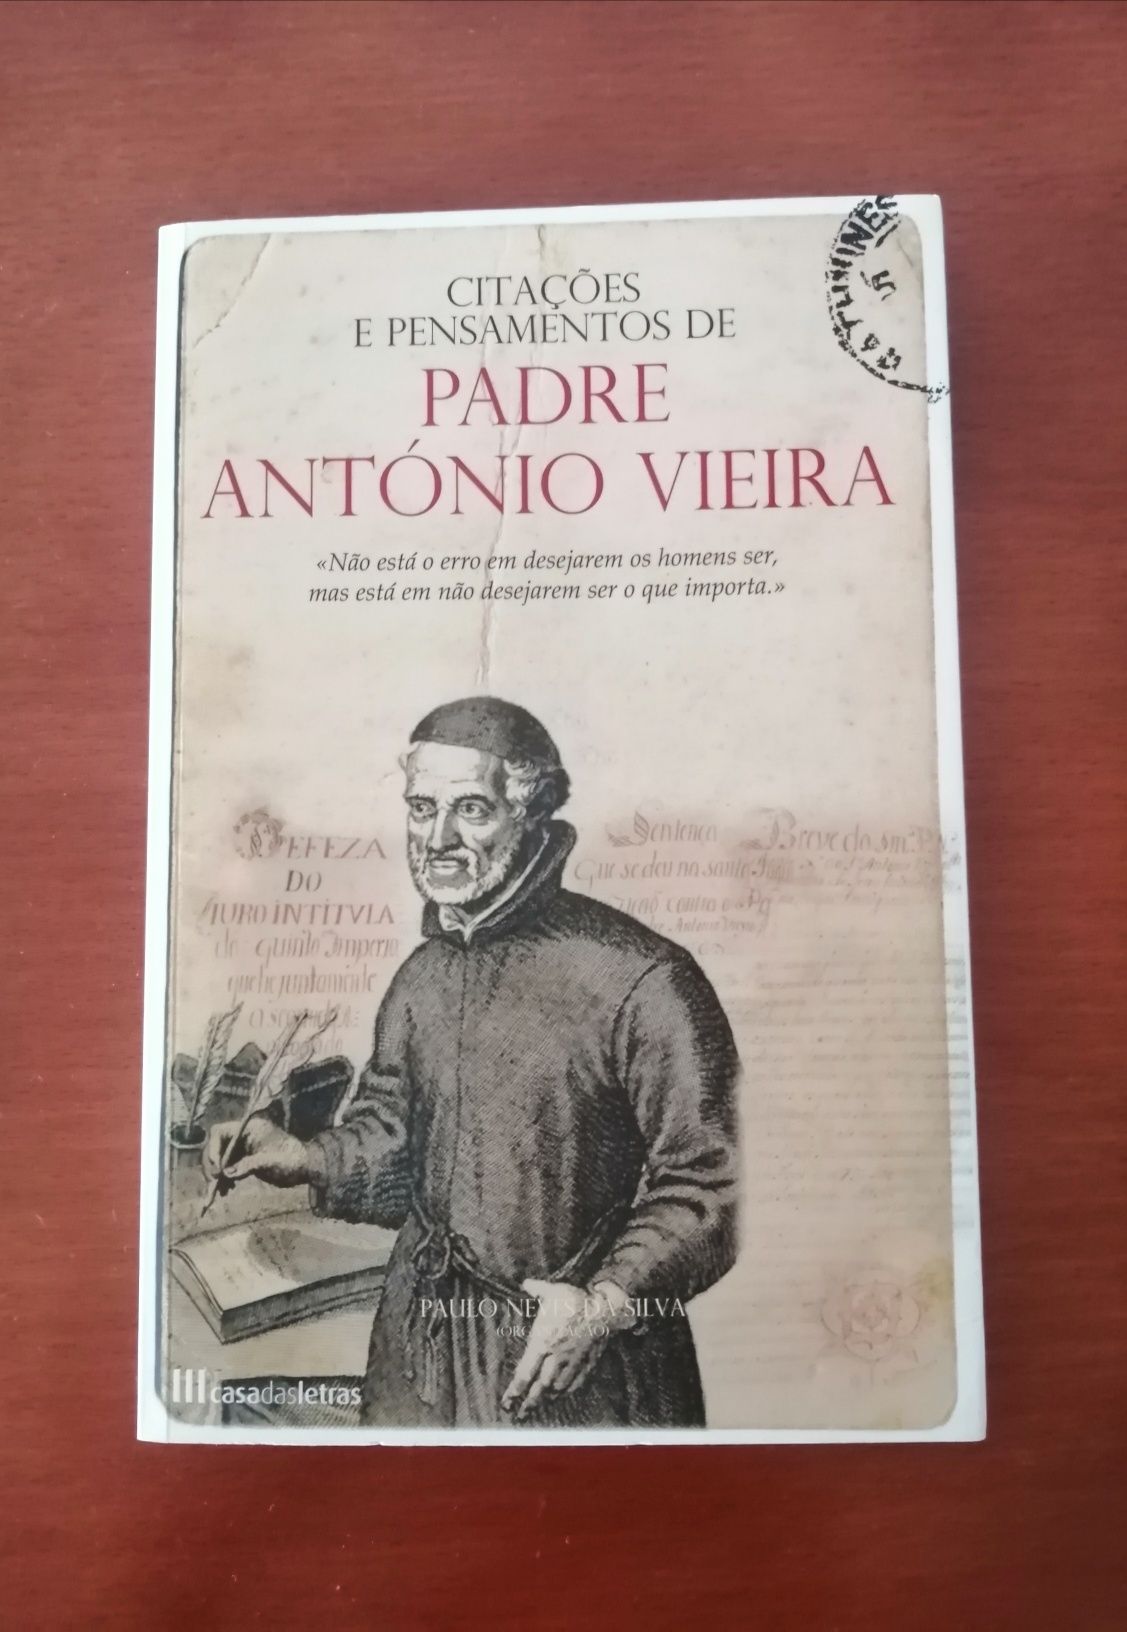 Livro de Padre António Vieira - Citações e Pensamentos como Novo.